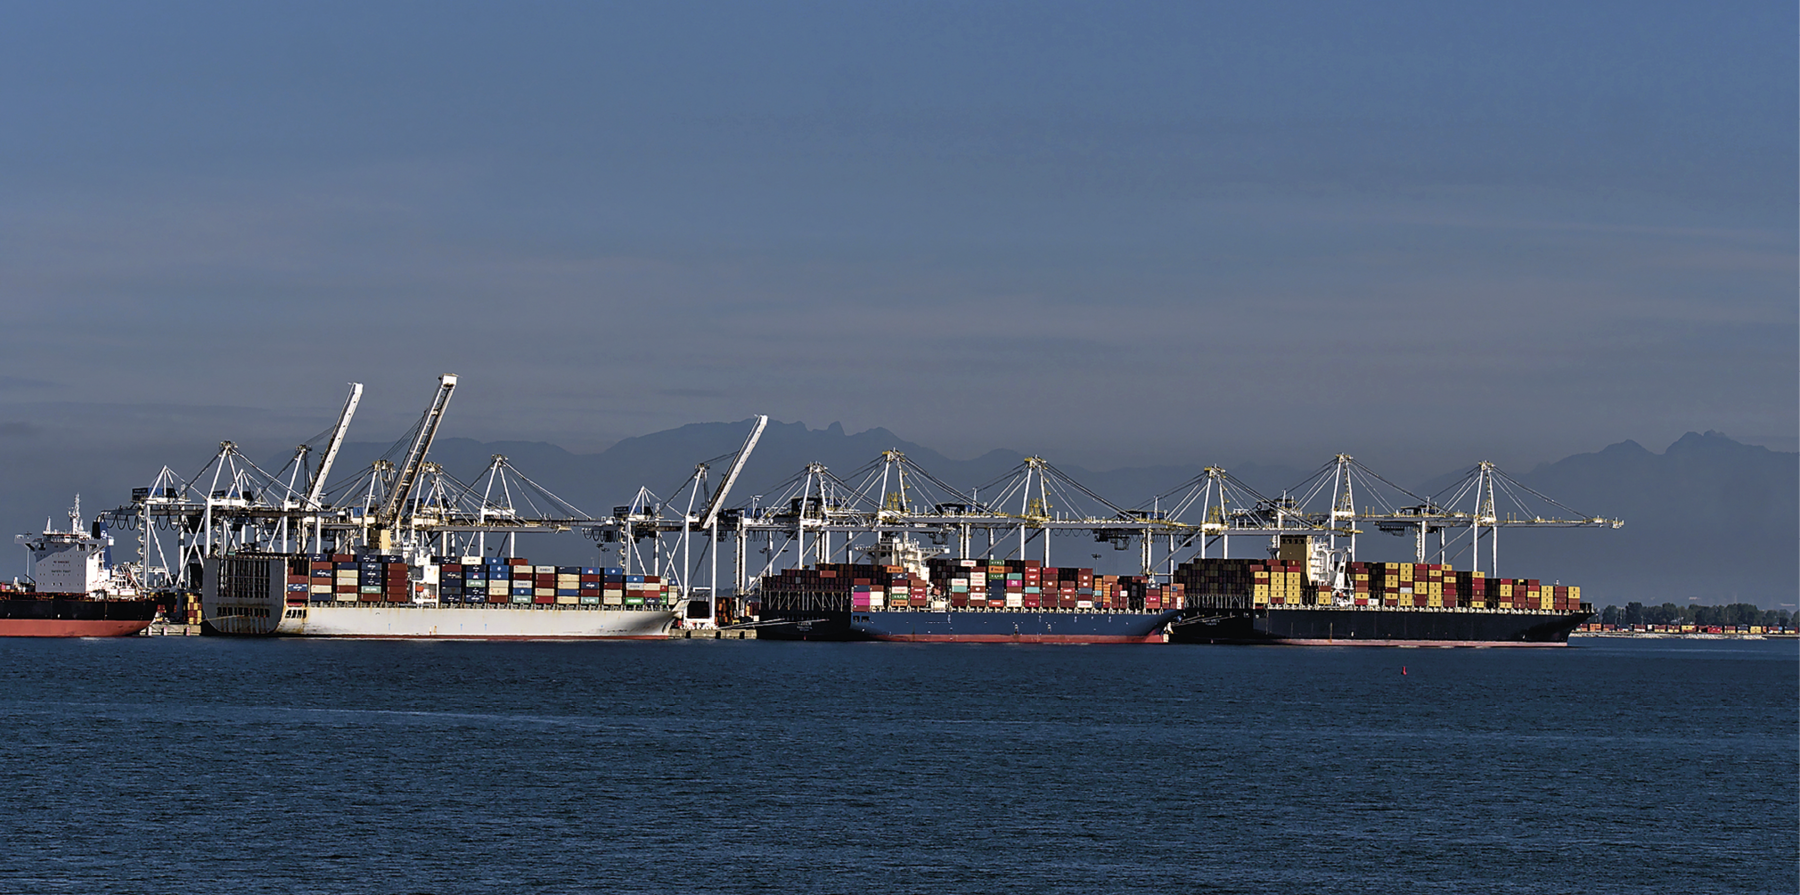 Fotografia. Vista de um porto oceânico com navios de carga ancorados. Os navios possuem grandes estruturas, como guindastes, e estão ocupados por diversos contêineres. Ao fundo montanhas e na parte superior da foto, céu azul.